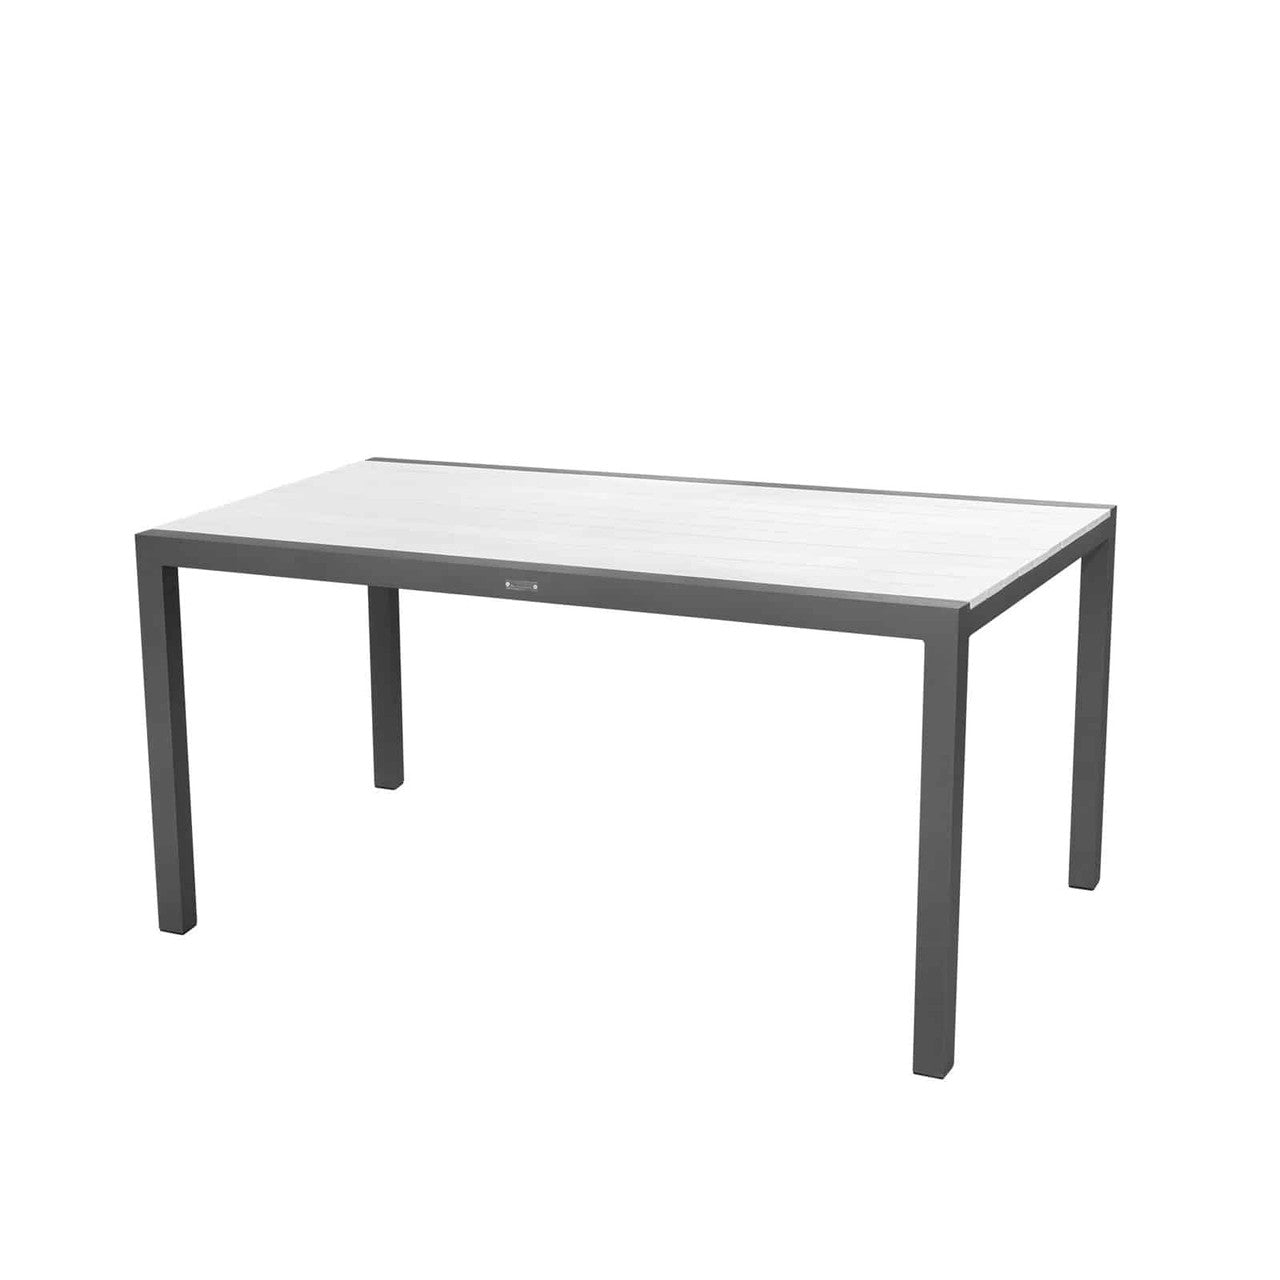 Source Furniture Modera Dining Table - Rectangular